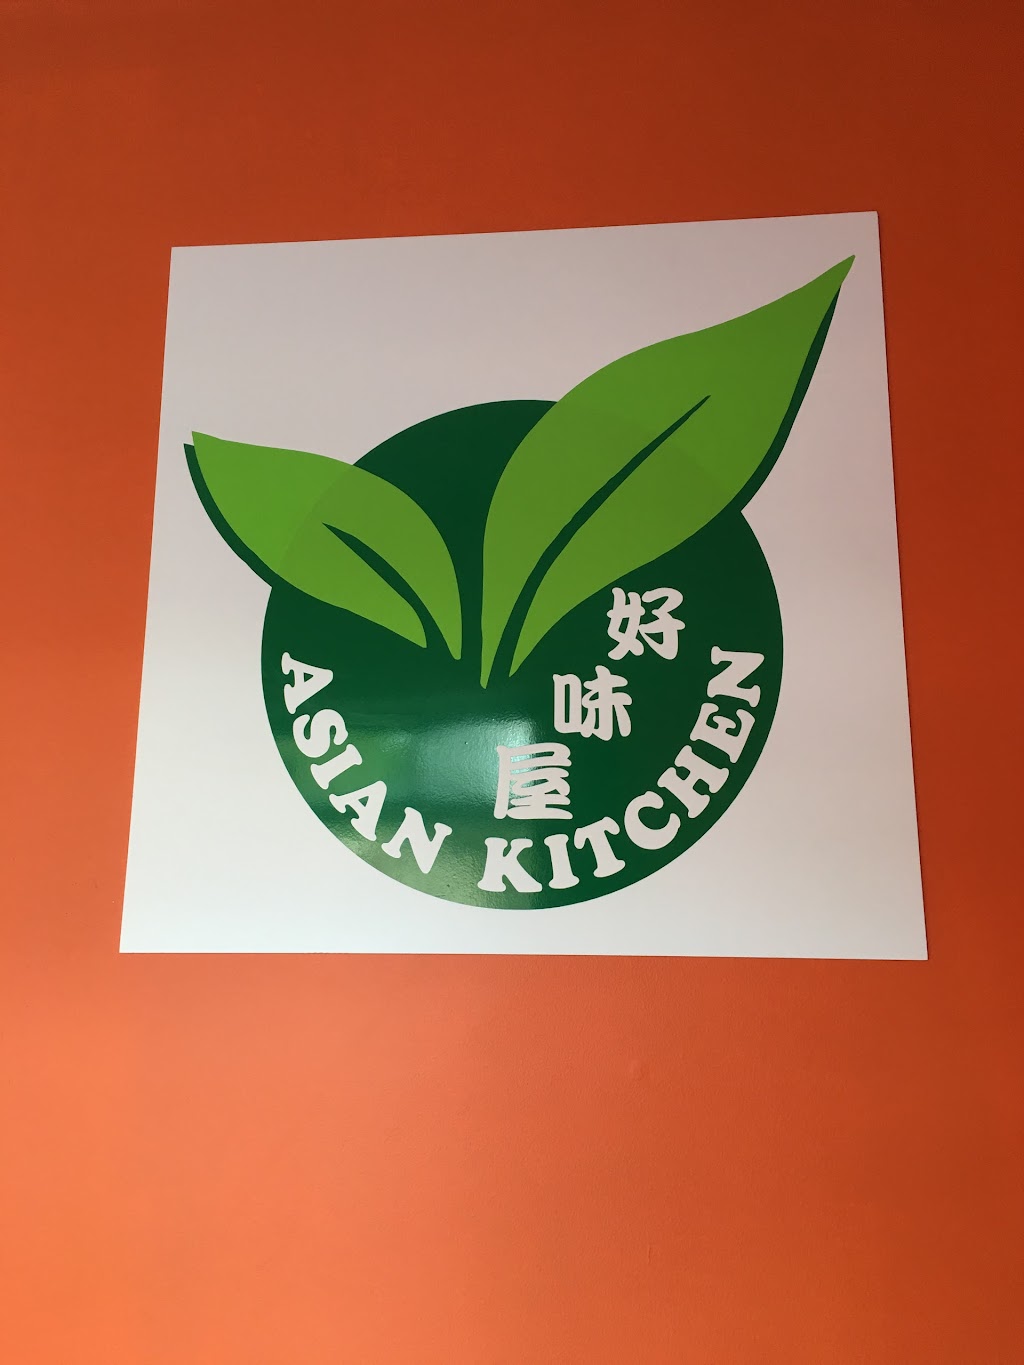 Little Basil Asian Kitchen | 1331, 906 Conestoga Rd, Bryn Mawr, PA 19010 | Phone: (610) 525-4210